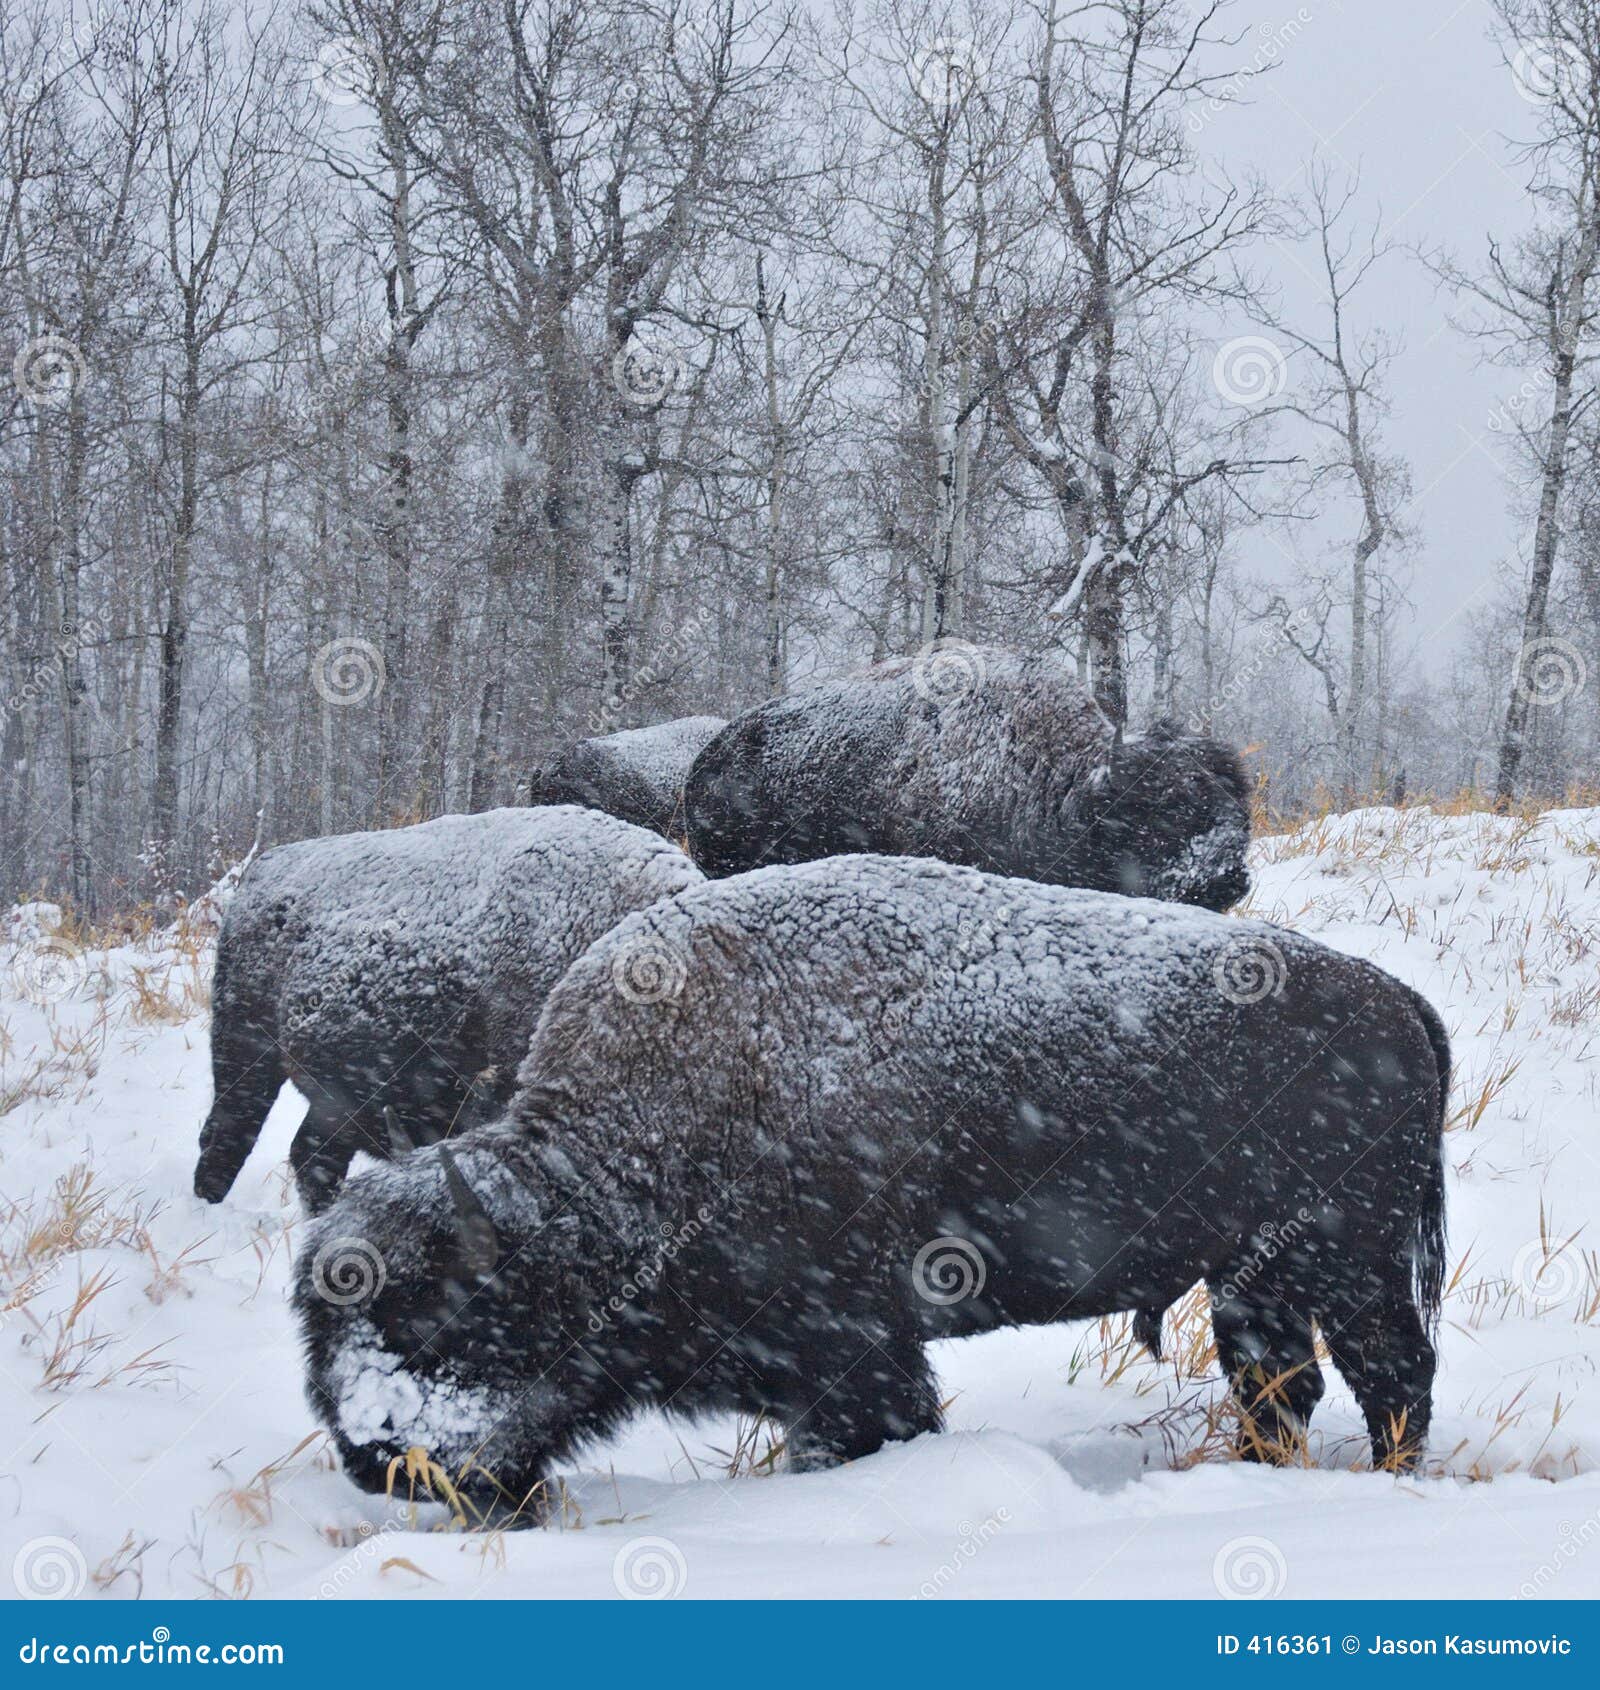 blizzard bison